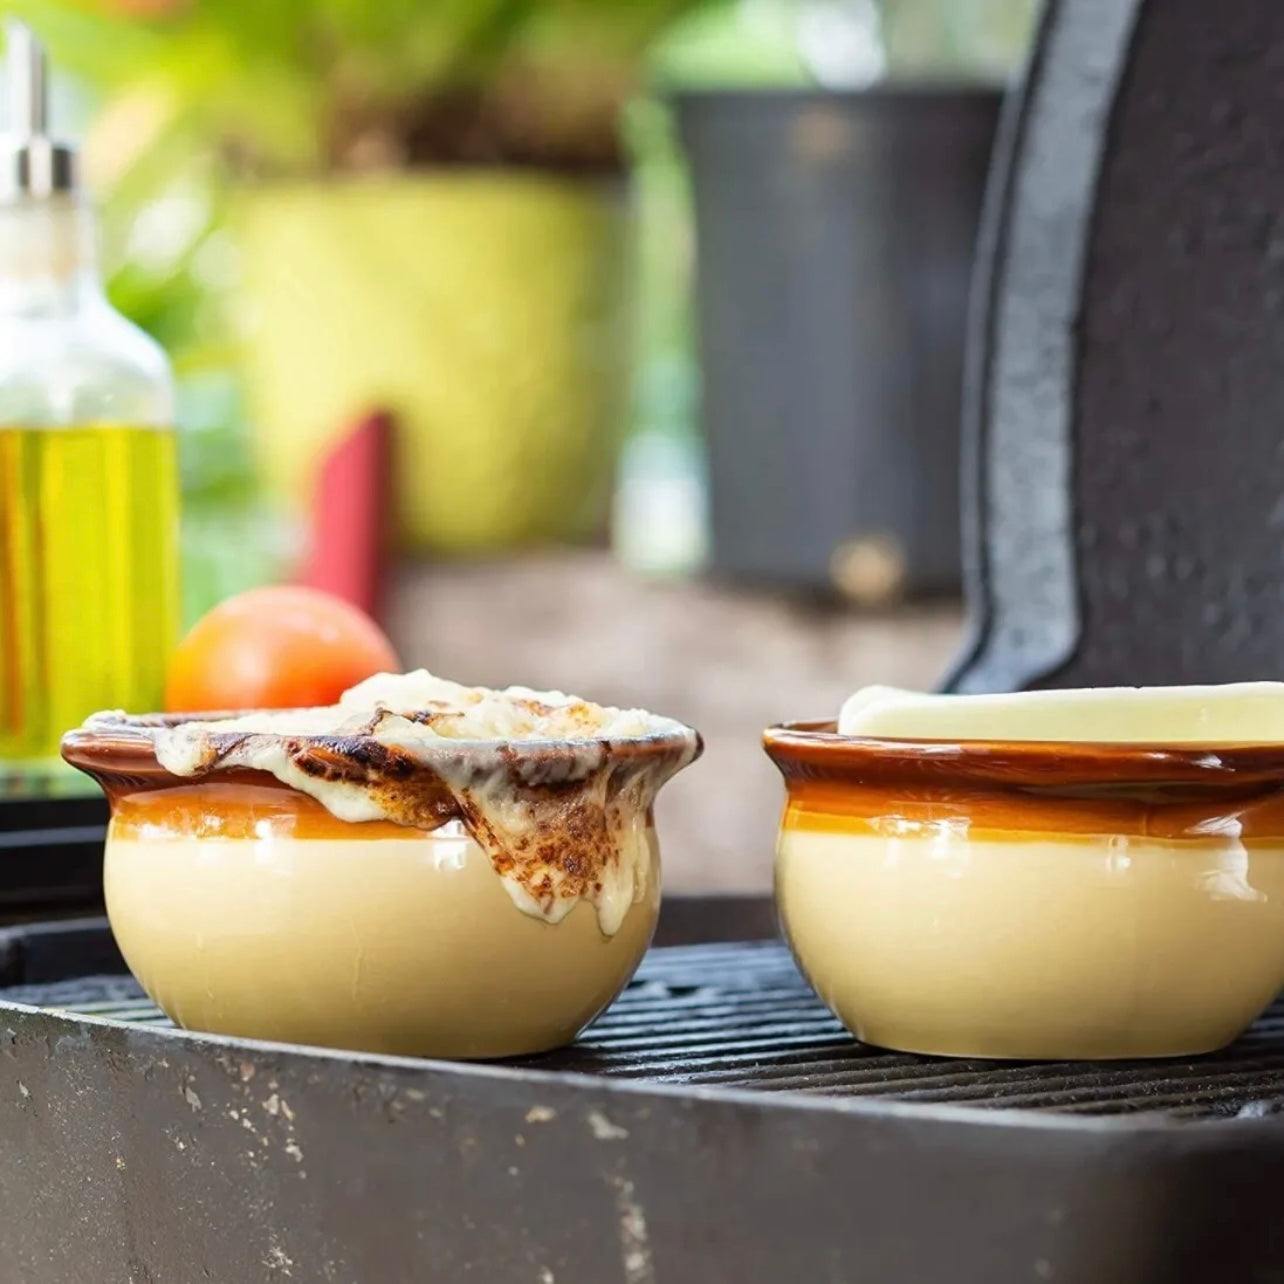 Soup Crocks Bake & Serve Oven Safe Ceramic Soup Bowls With Handles